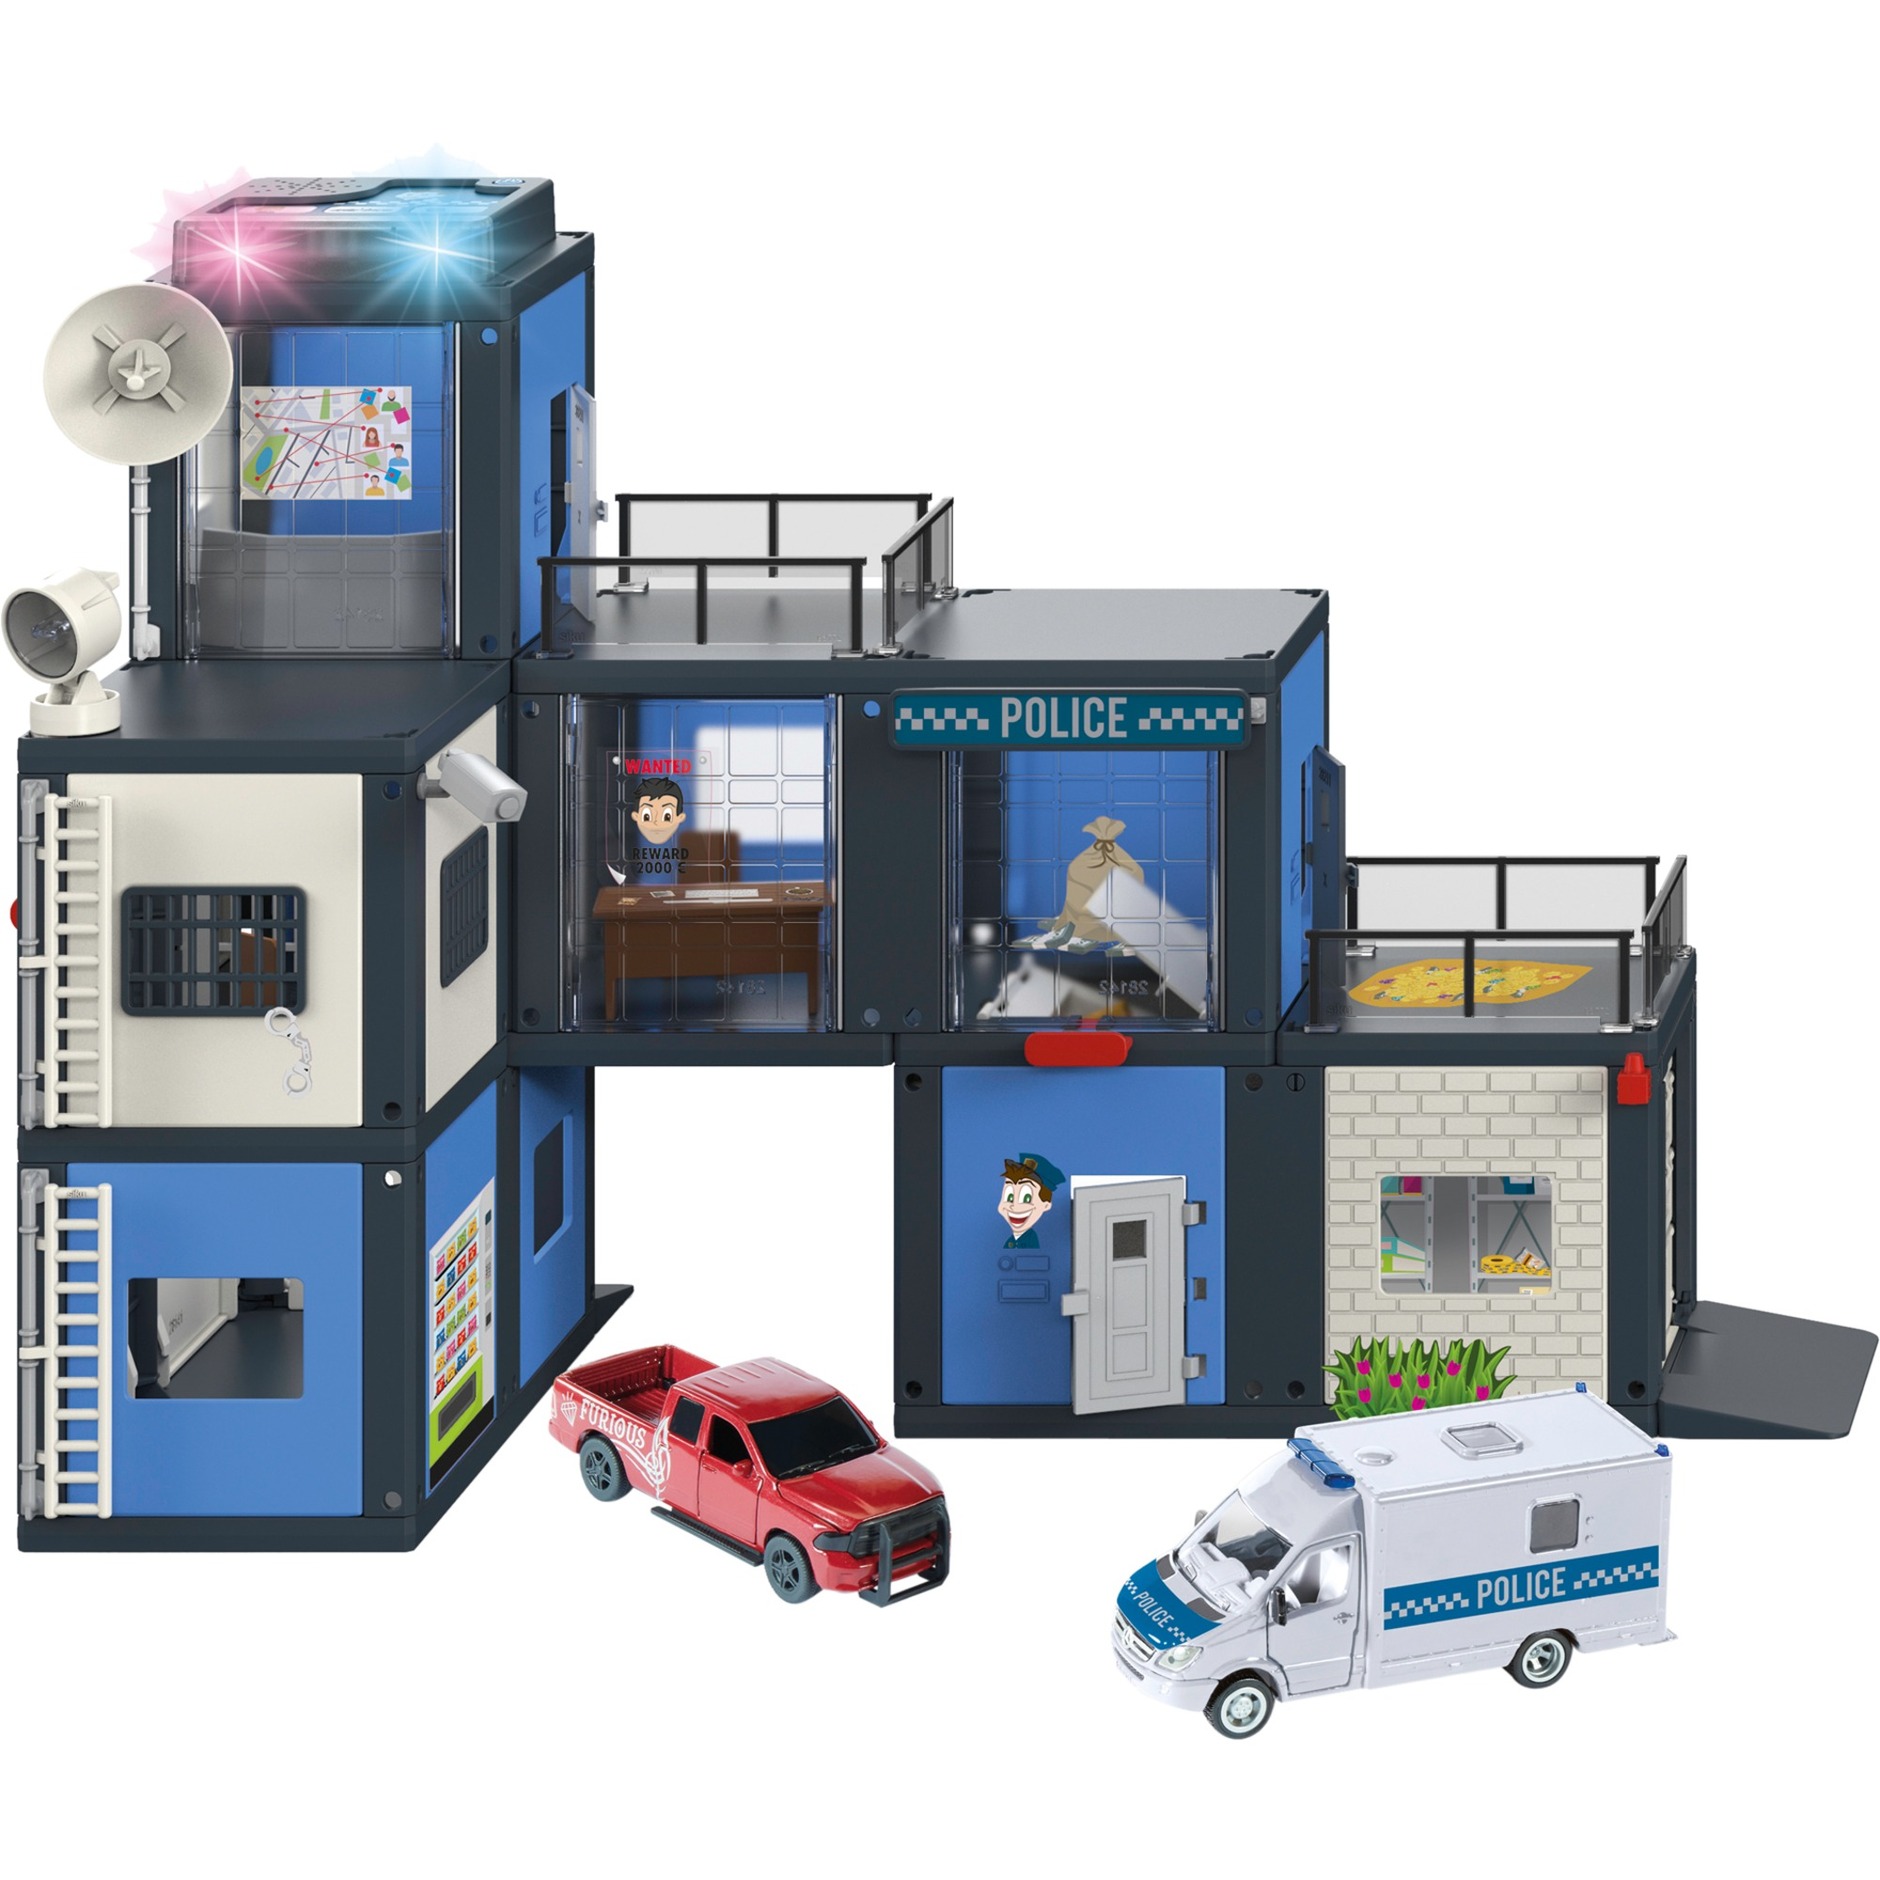 Image of Alternate - WORLD Polizeistation, Modellfahrzeug online einkaufen bei Alternate